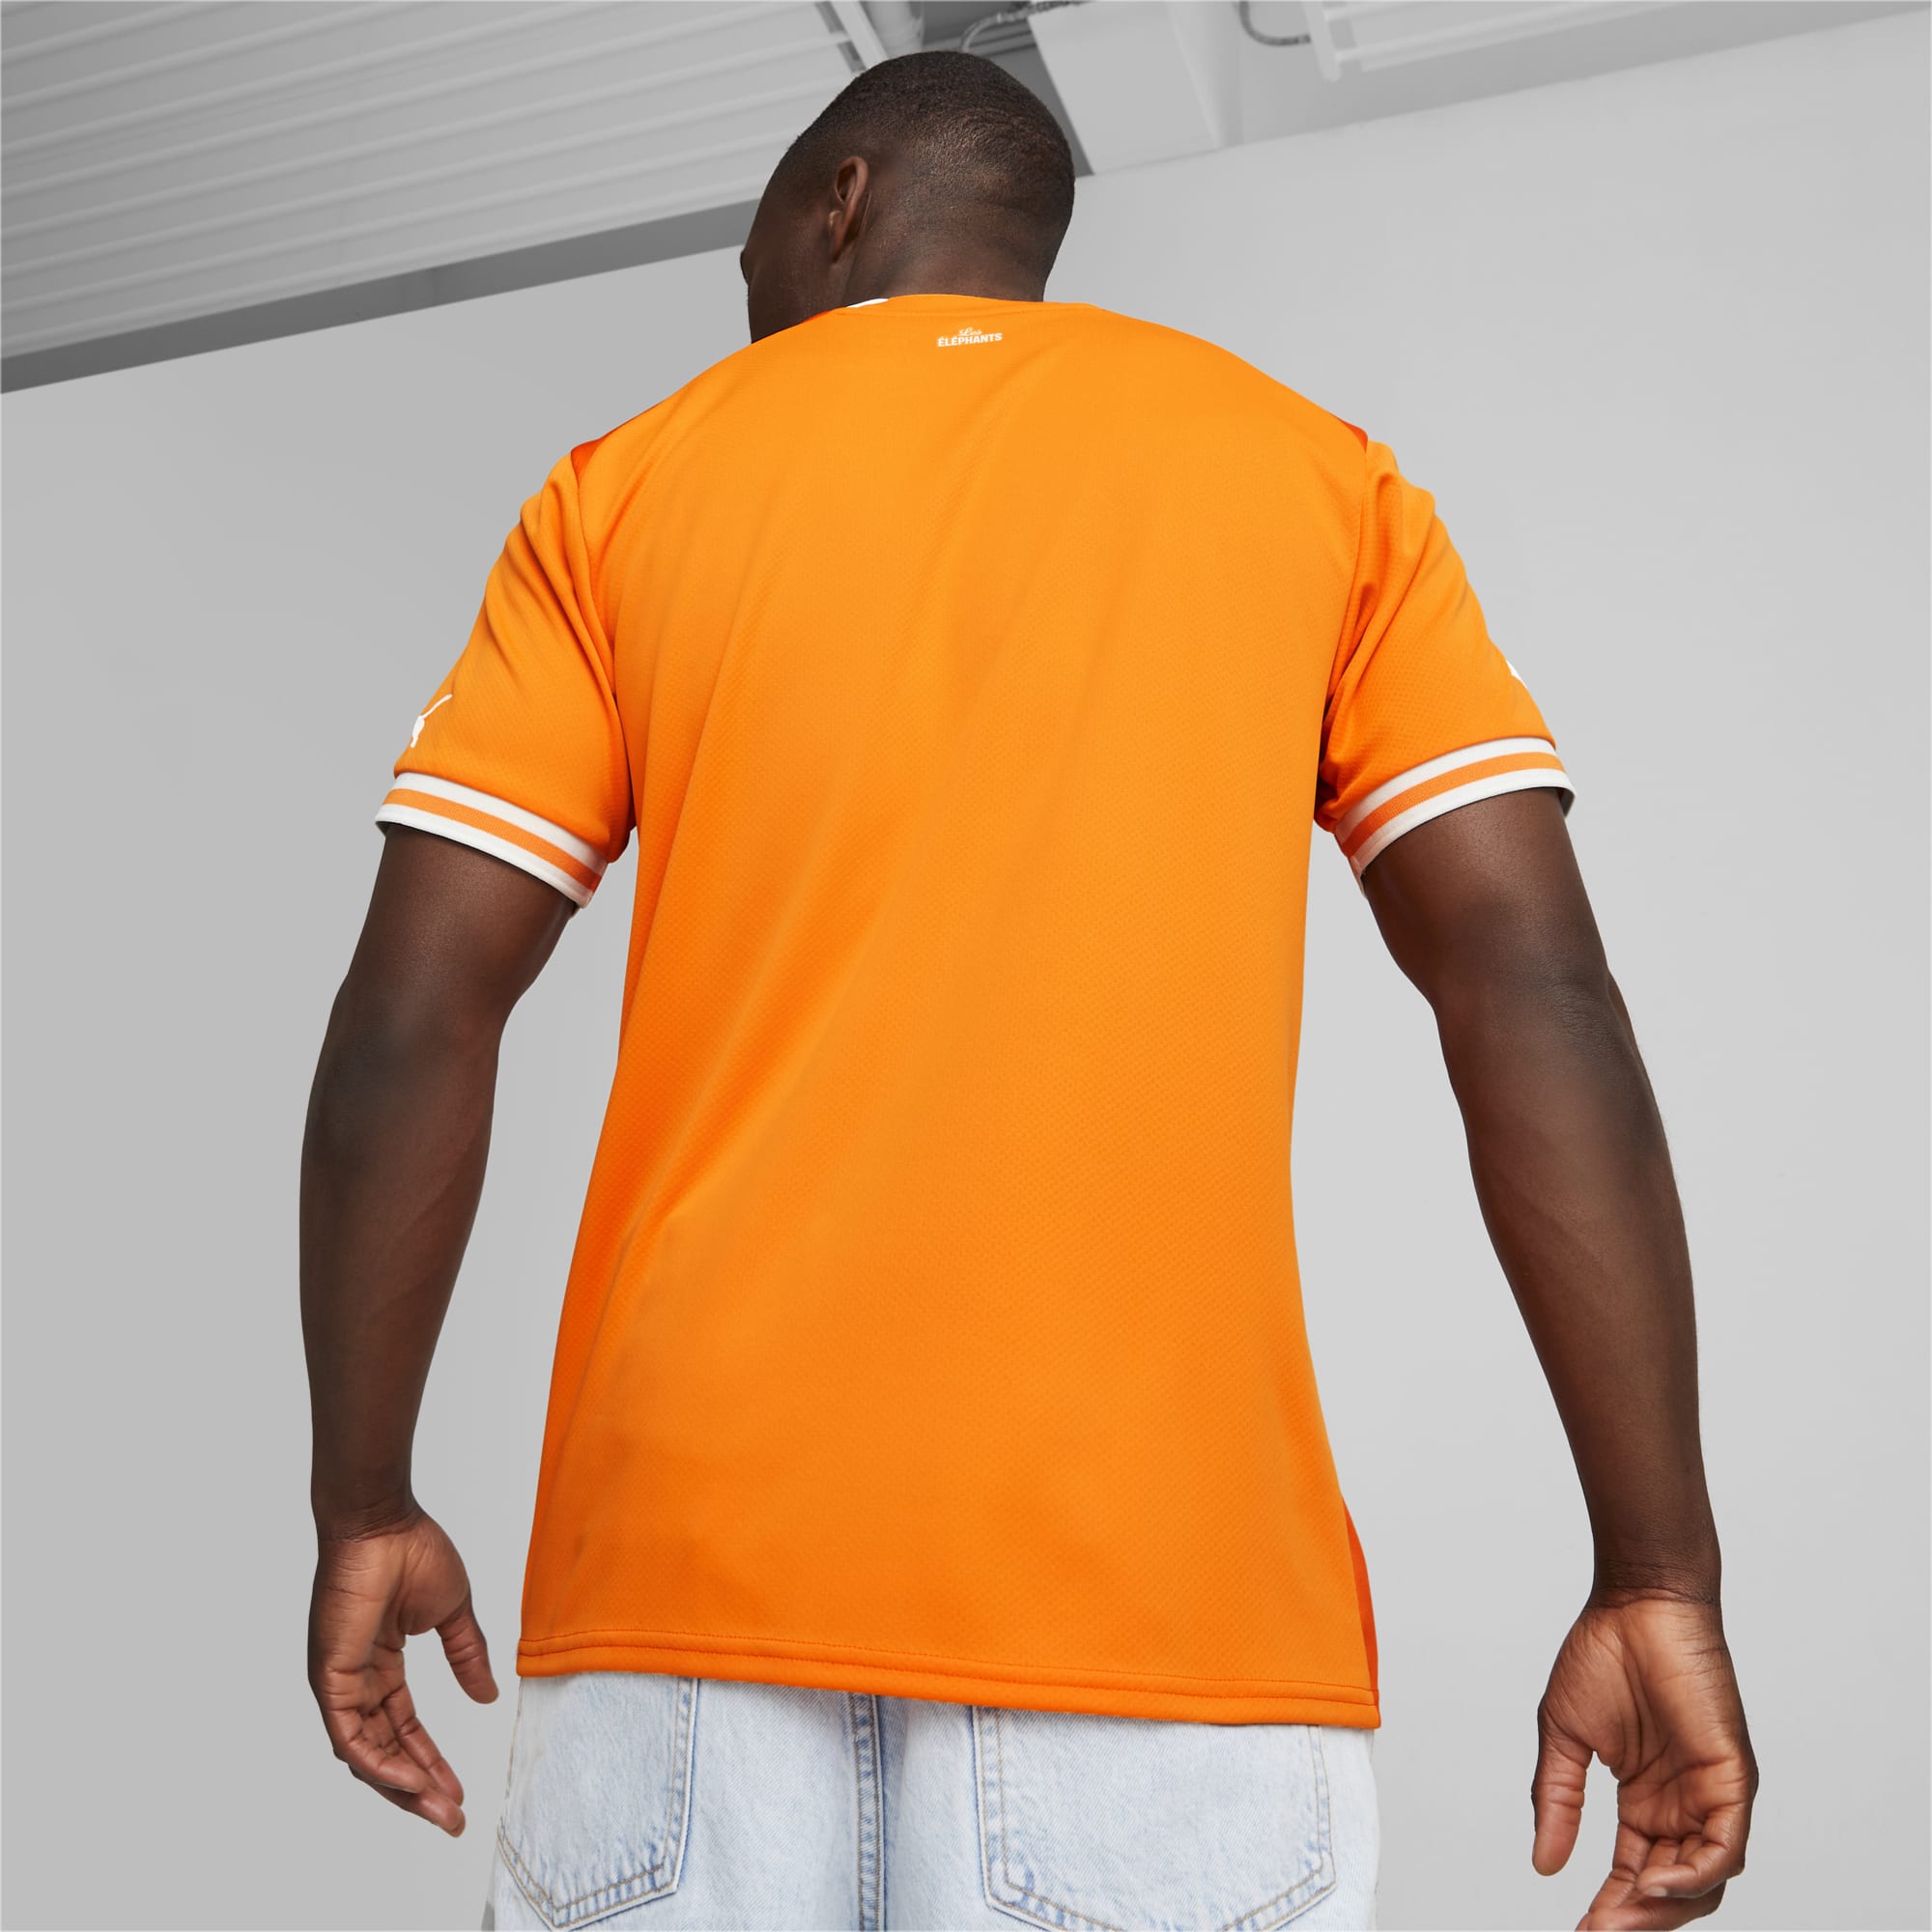 À quoi font référence les maillots de la Côte d'Ivoire ?